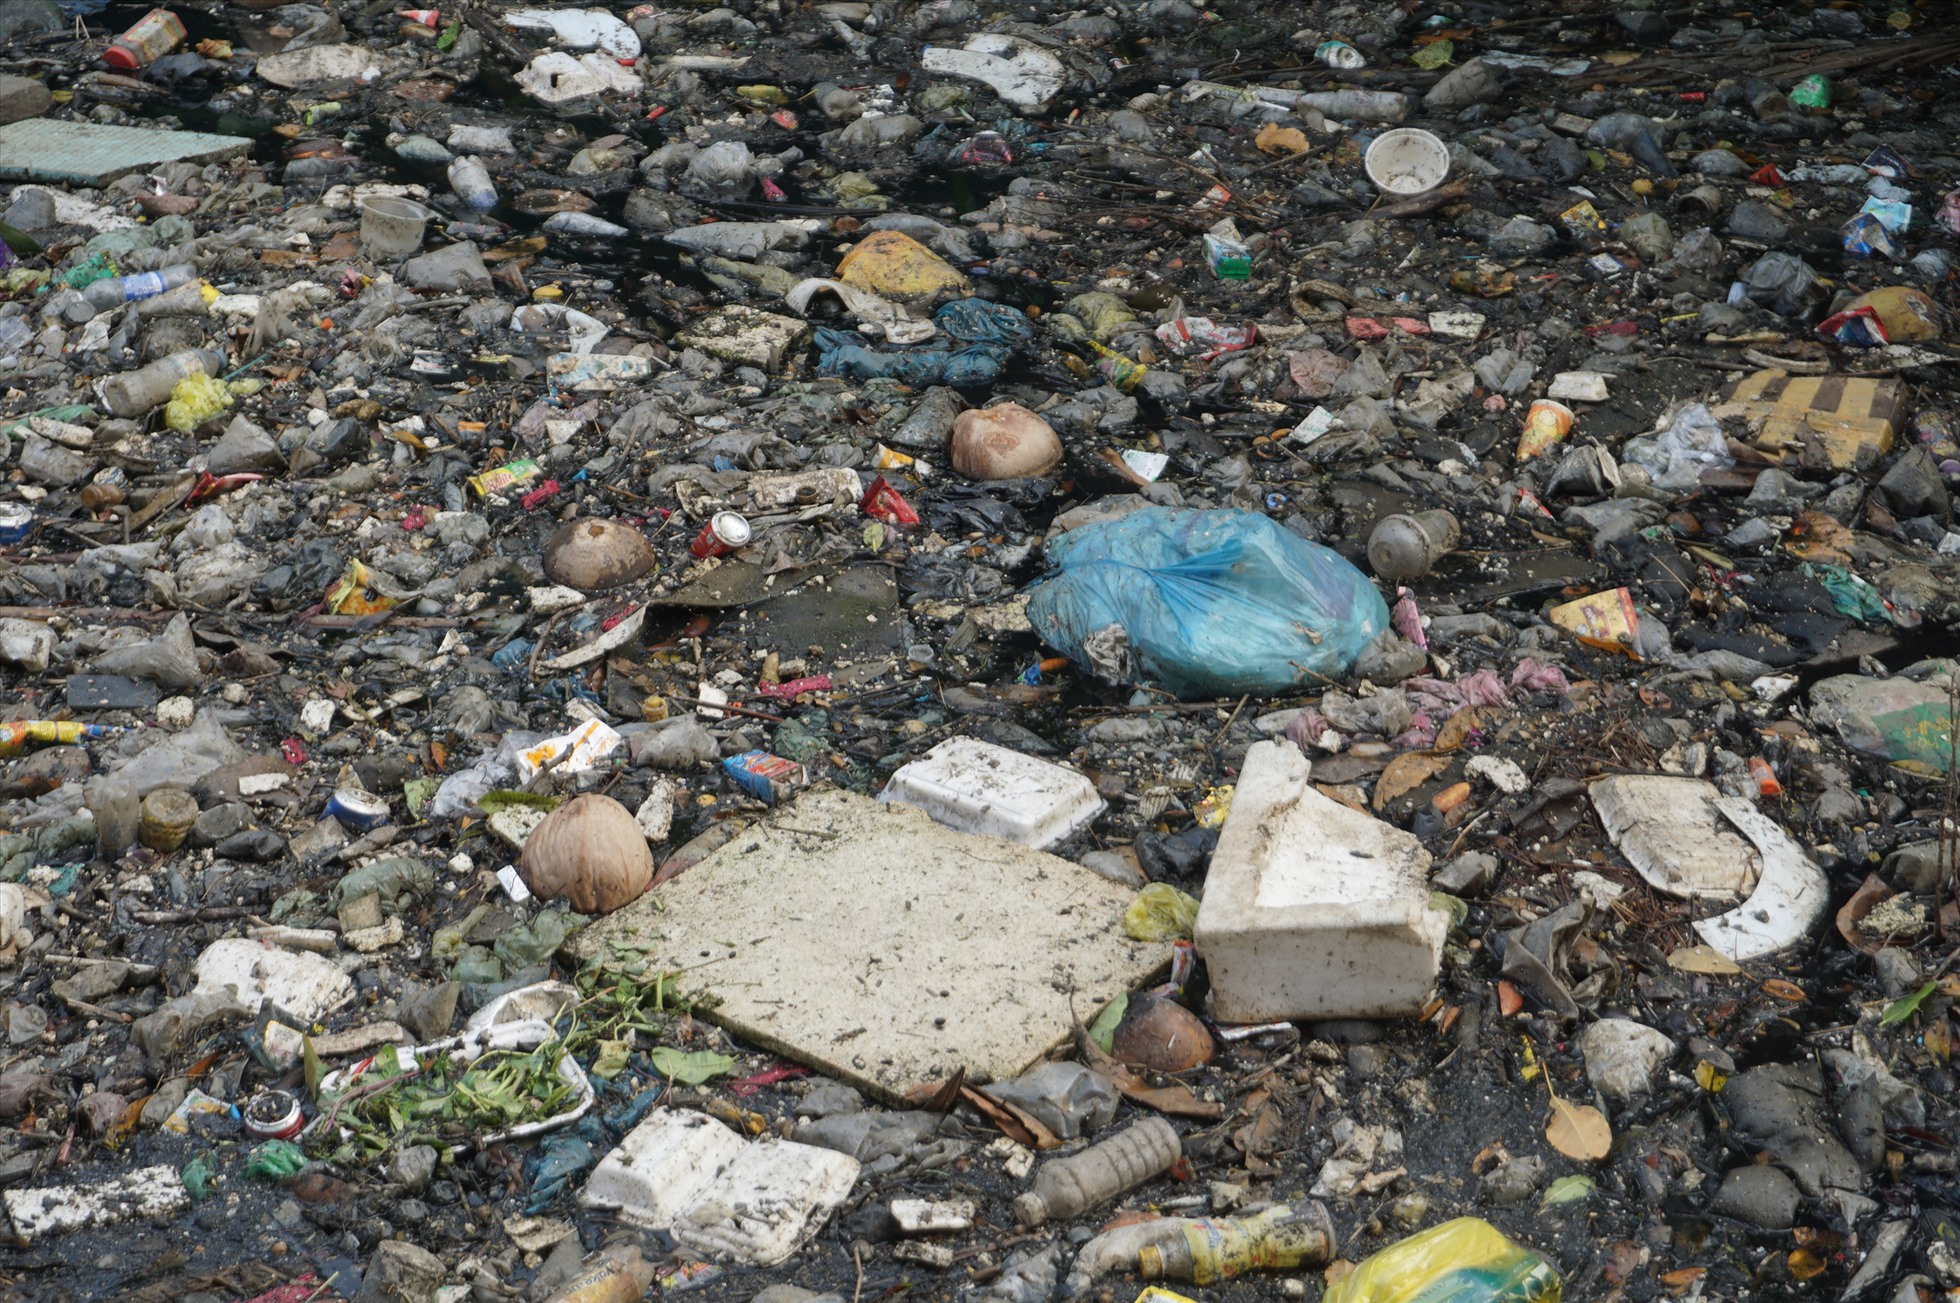 Các loại rác như chai nhựa, túi nylon, mút xốp, xác động vật... phủ kín mặt kênh.